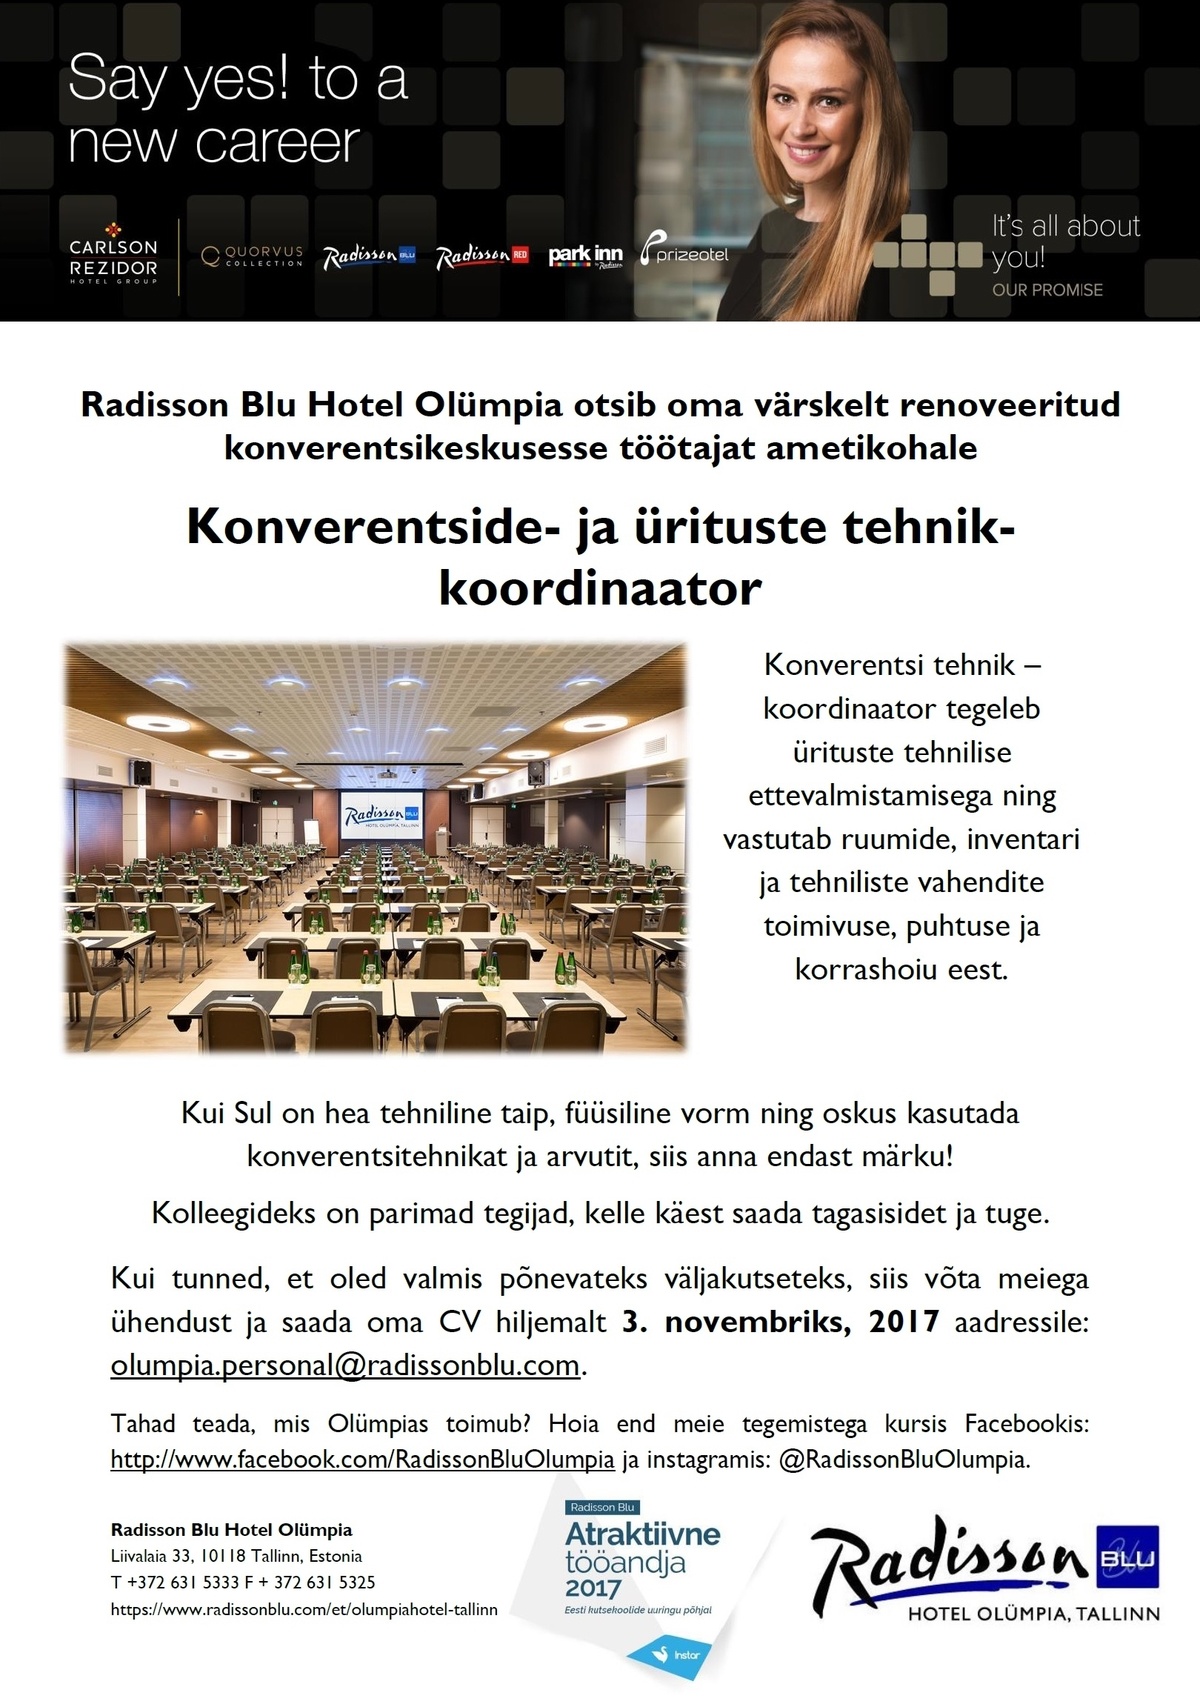 Radisson Blu Hotel Olümpia, Tallinn Konverentside- ja ürituste tehnik-koordinaator